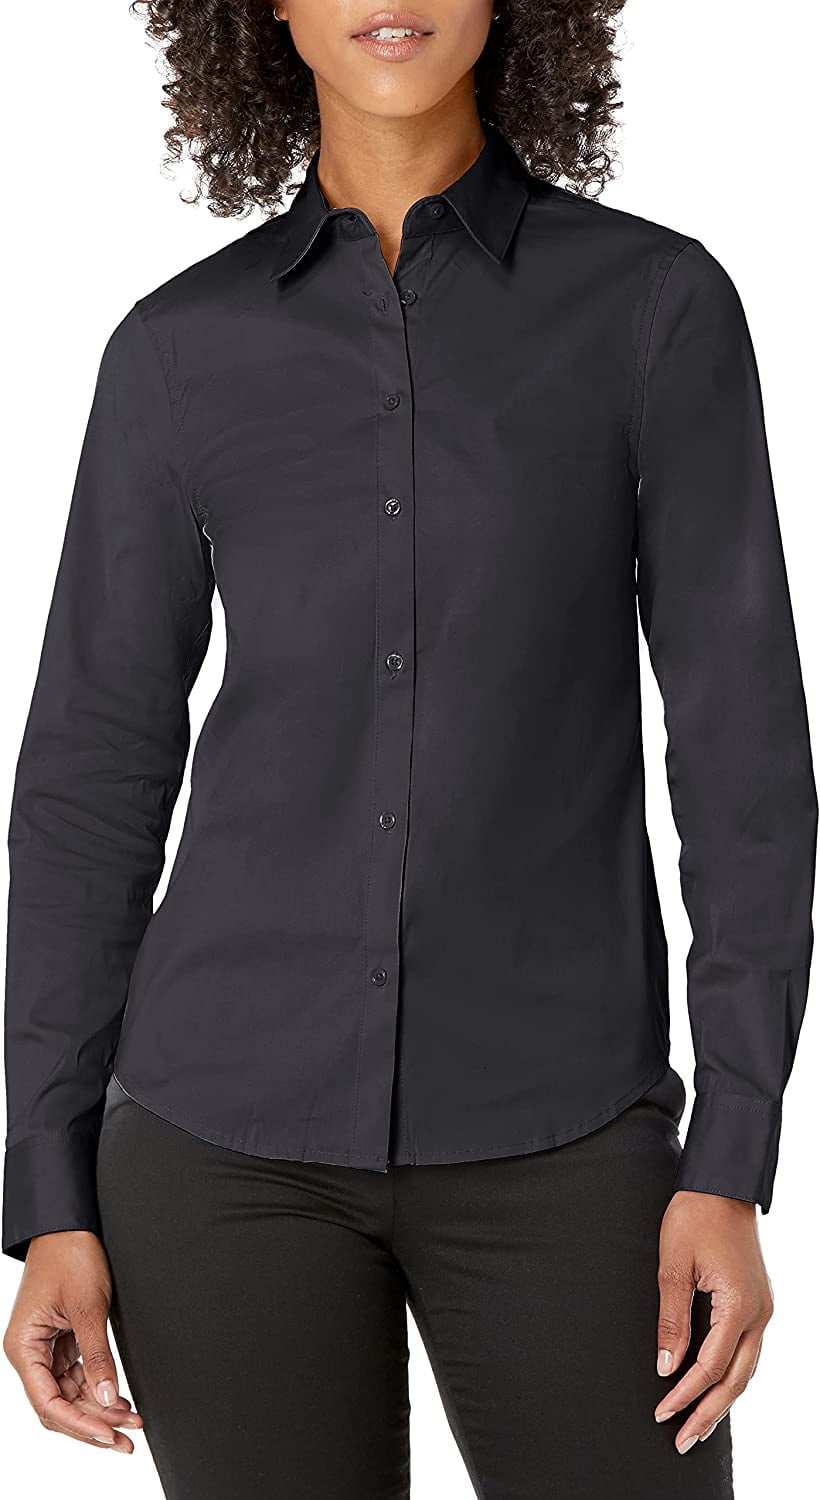 Women s Slim Fit Stretch Poplin Shirt Black 16 - Walmart.com